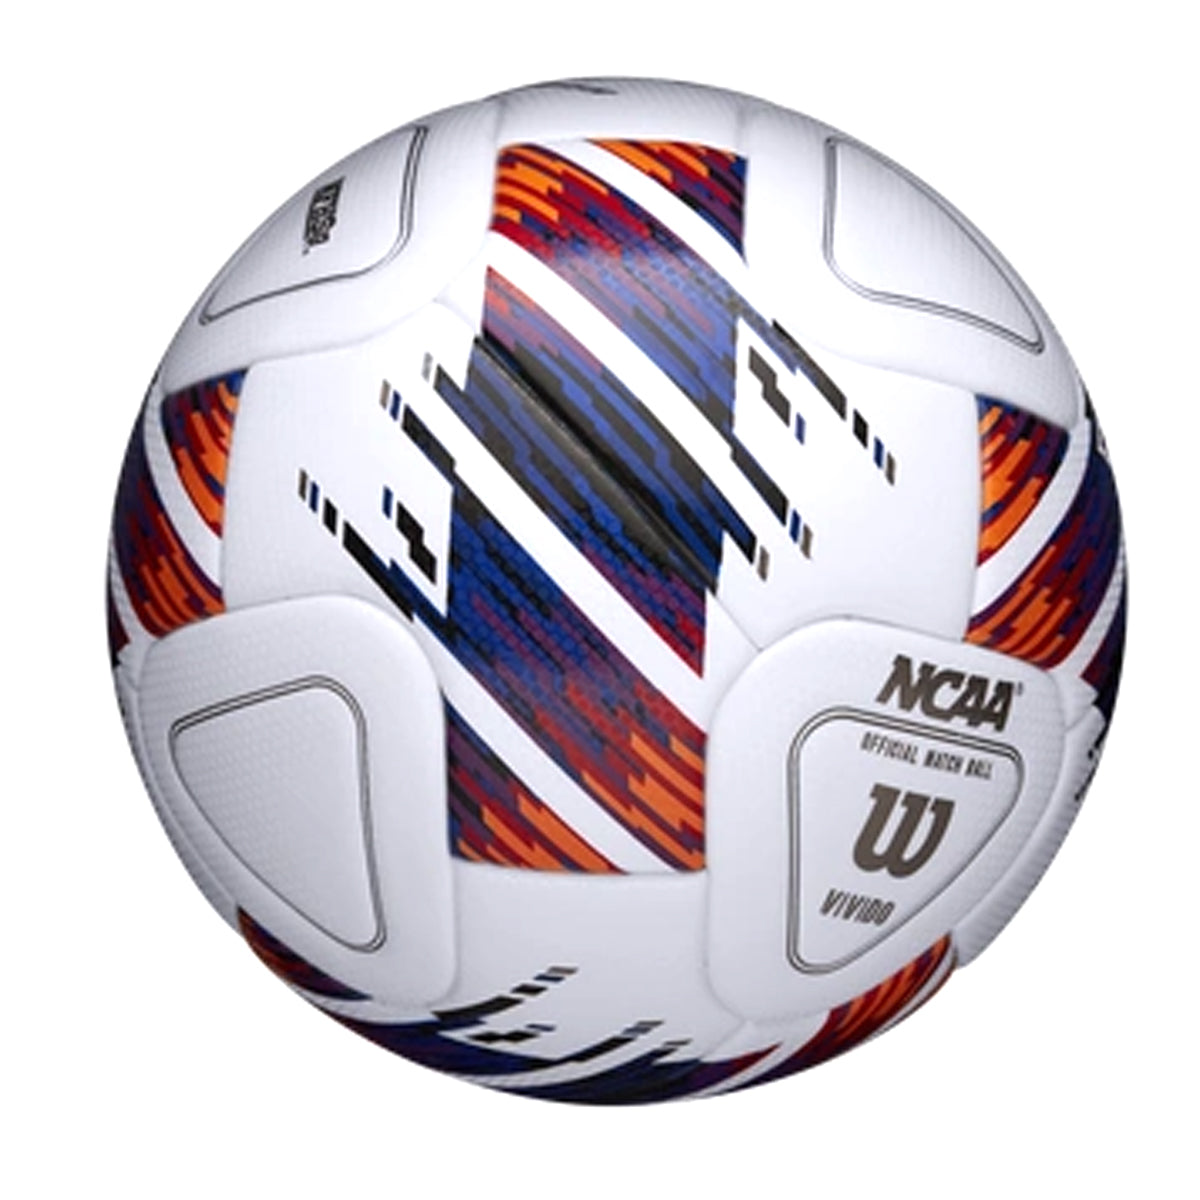 Wilson, Wilson NCAA Vivido Match Soccer Ball | WS1000901XB05